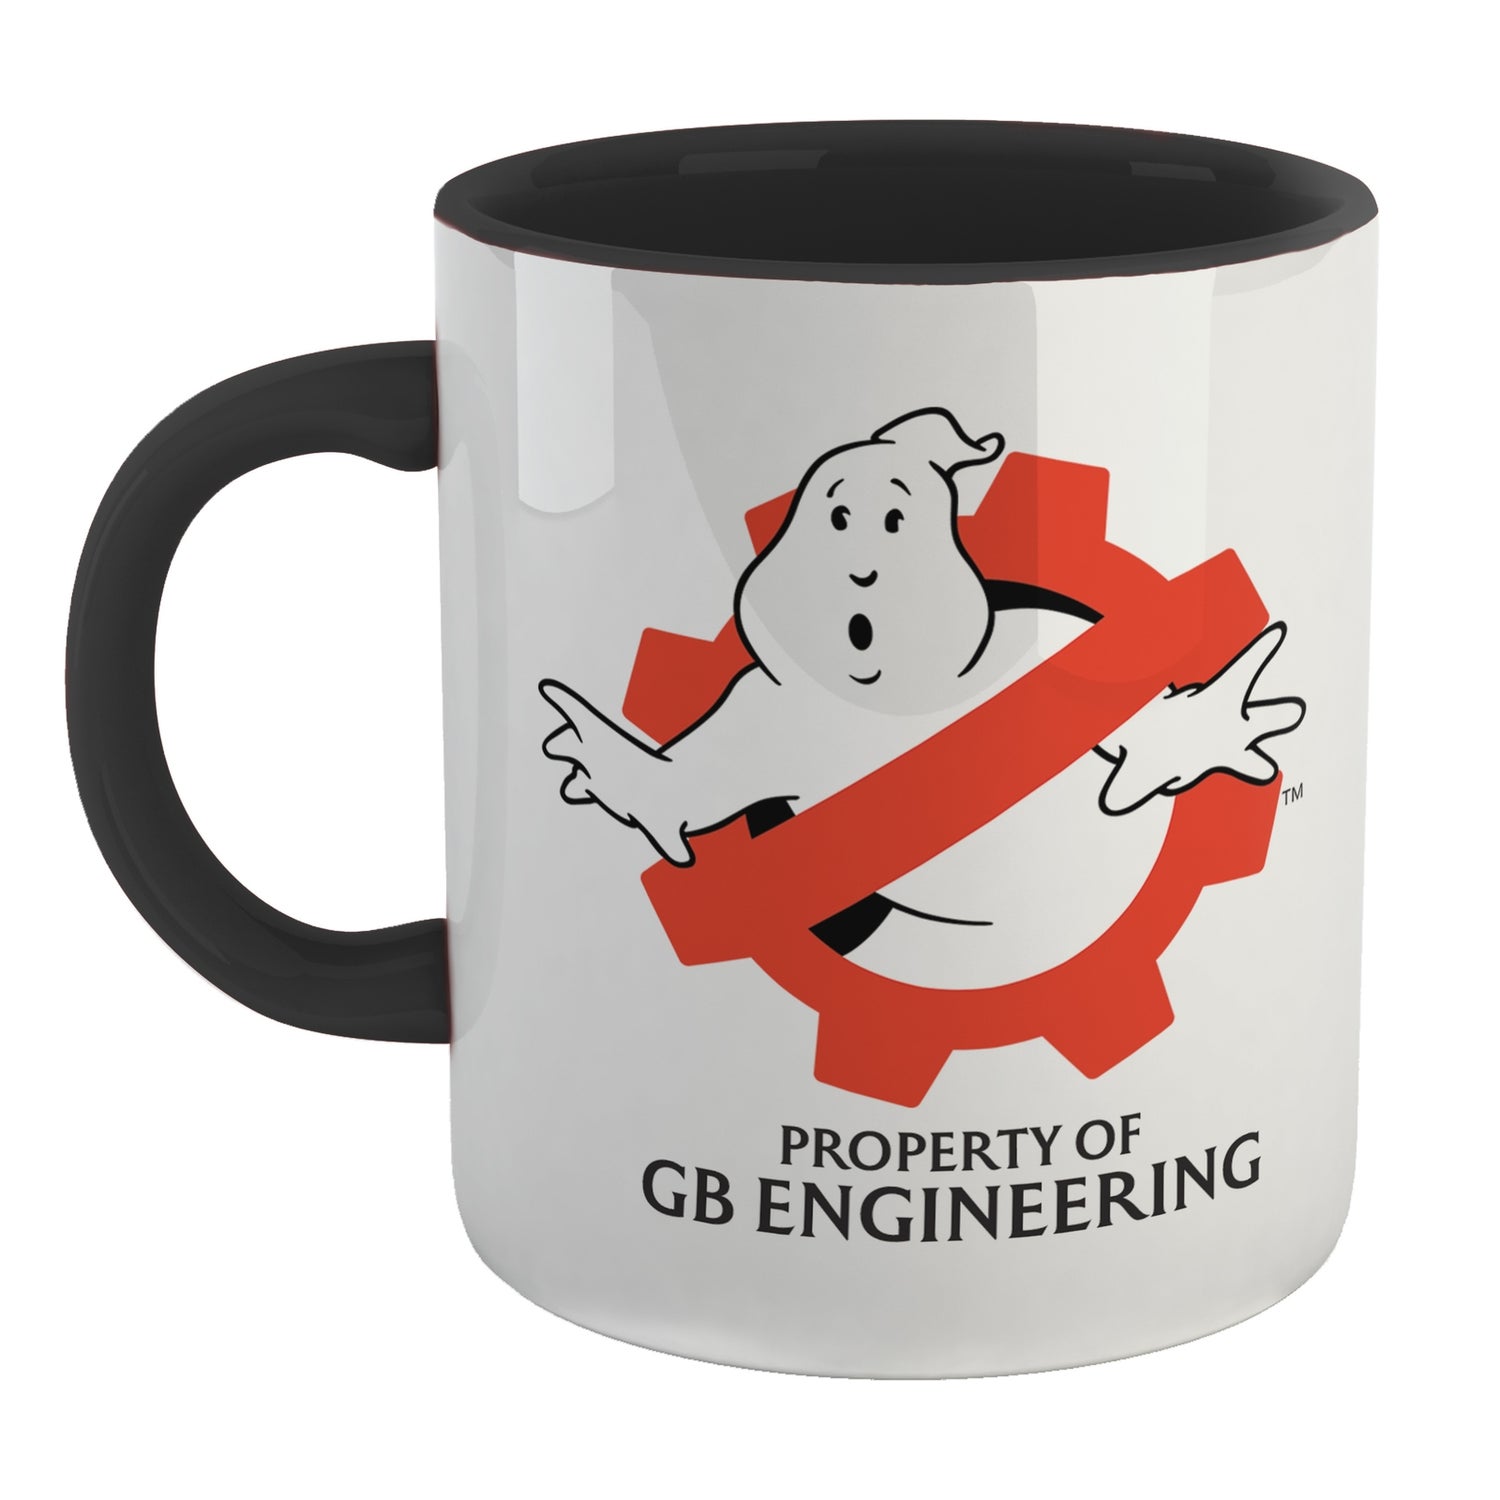 Ghostbusters GB Engineering Mug - Black